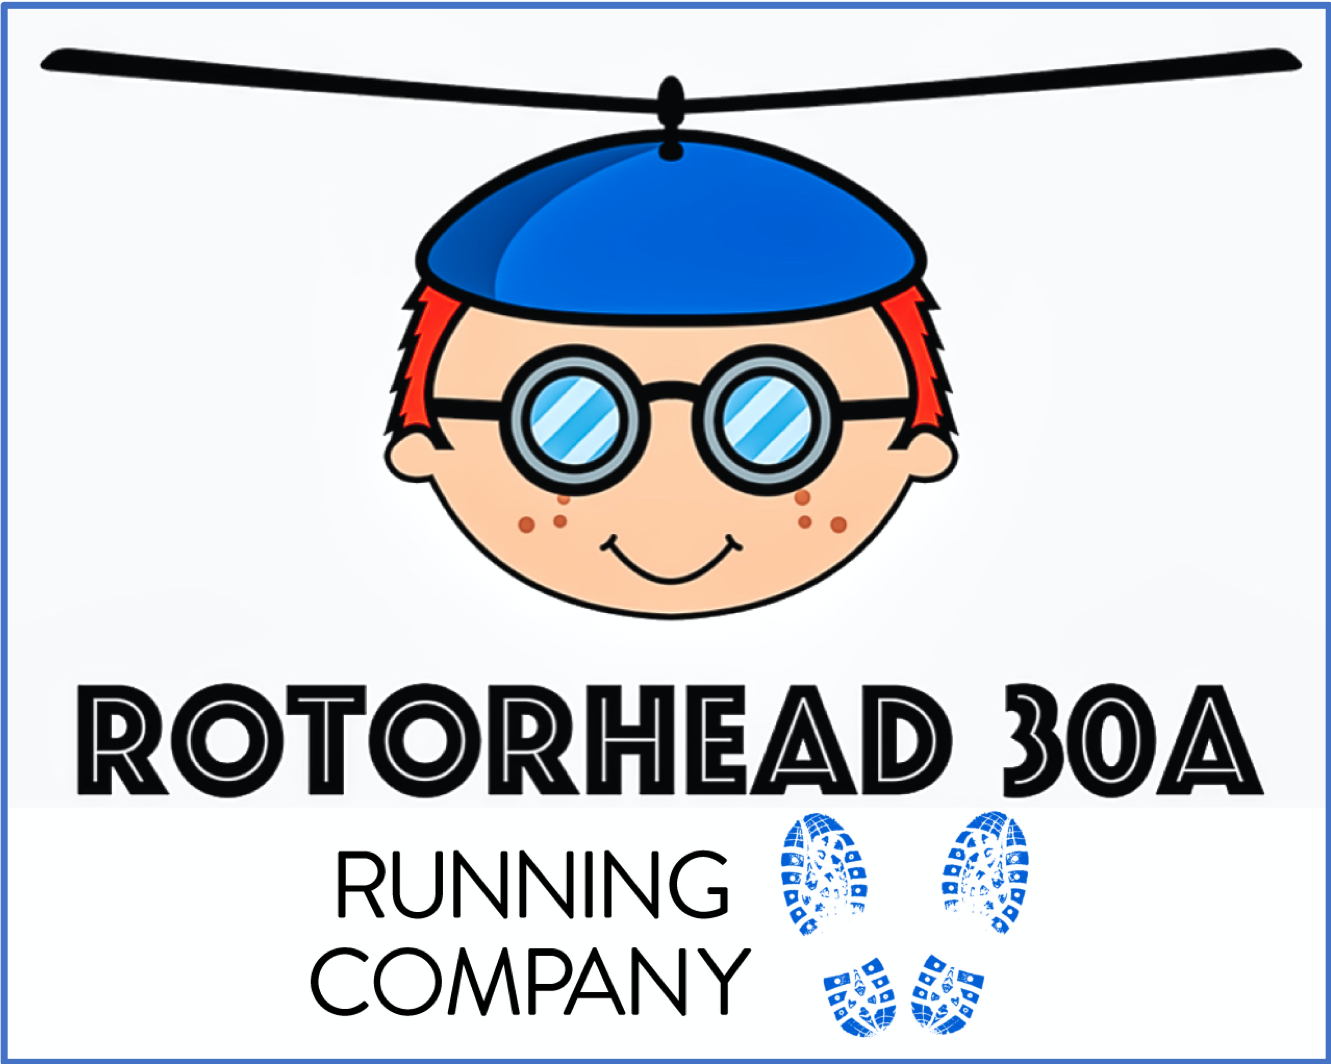 Rotorhead 30A Running Company